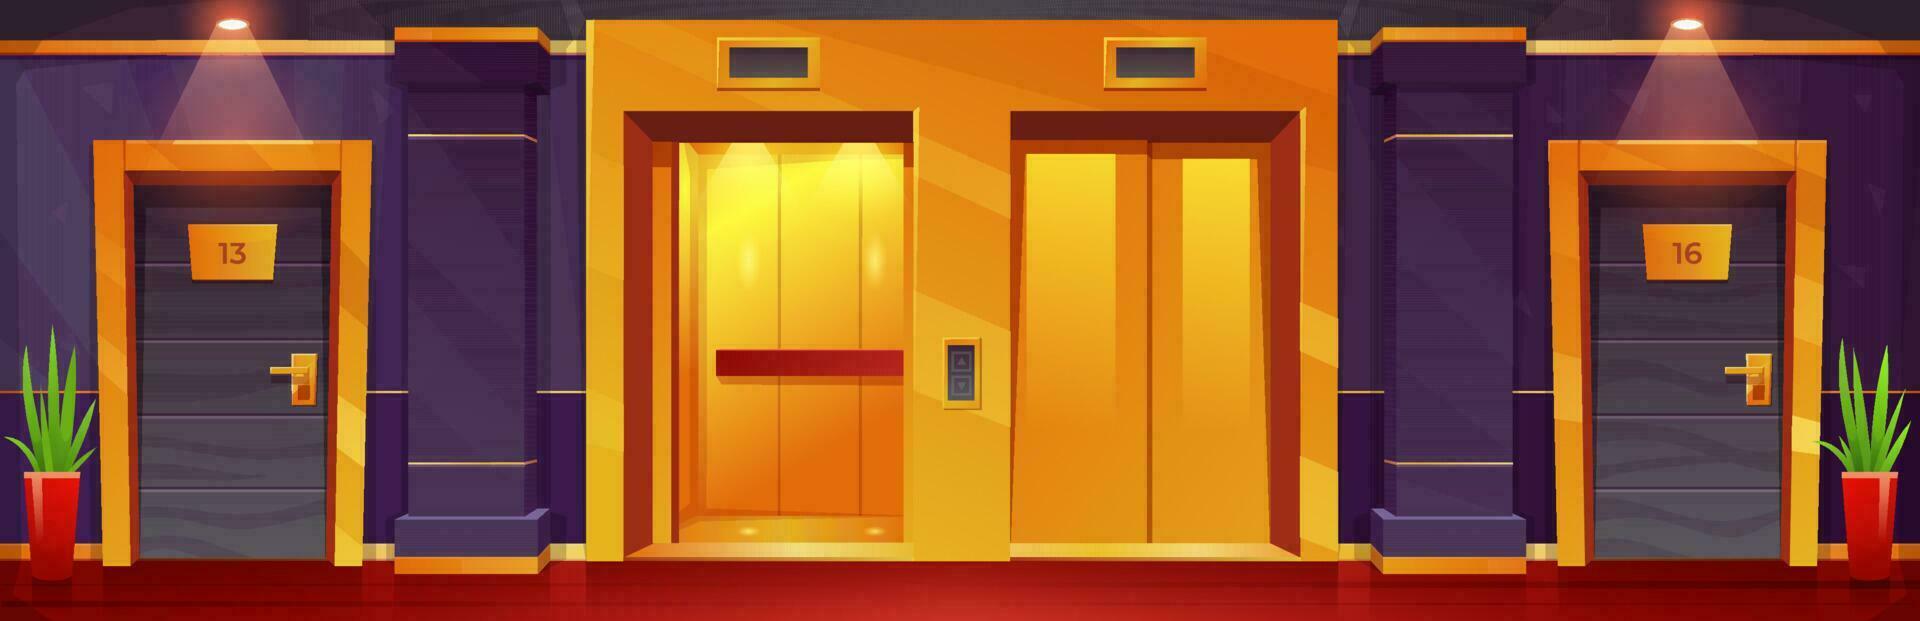 Karikatur Luxus Hotel Fußboden mit golden Aufzüge vektor